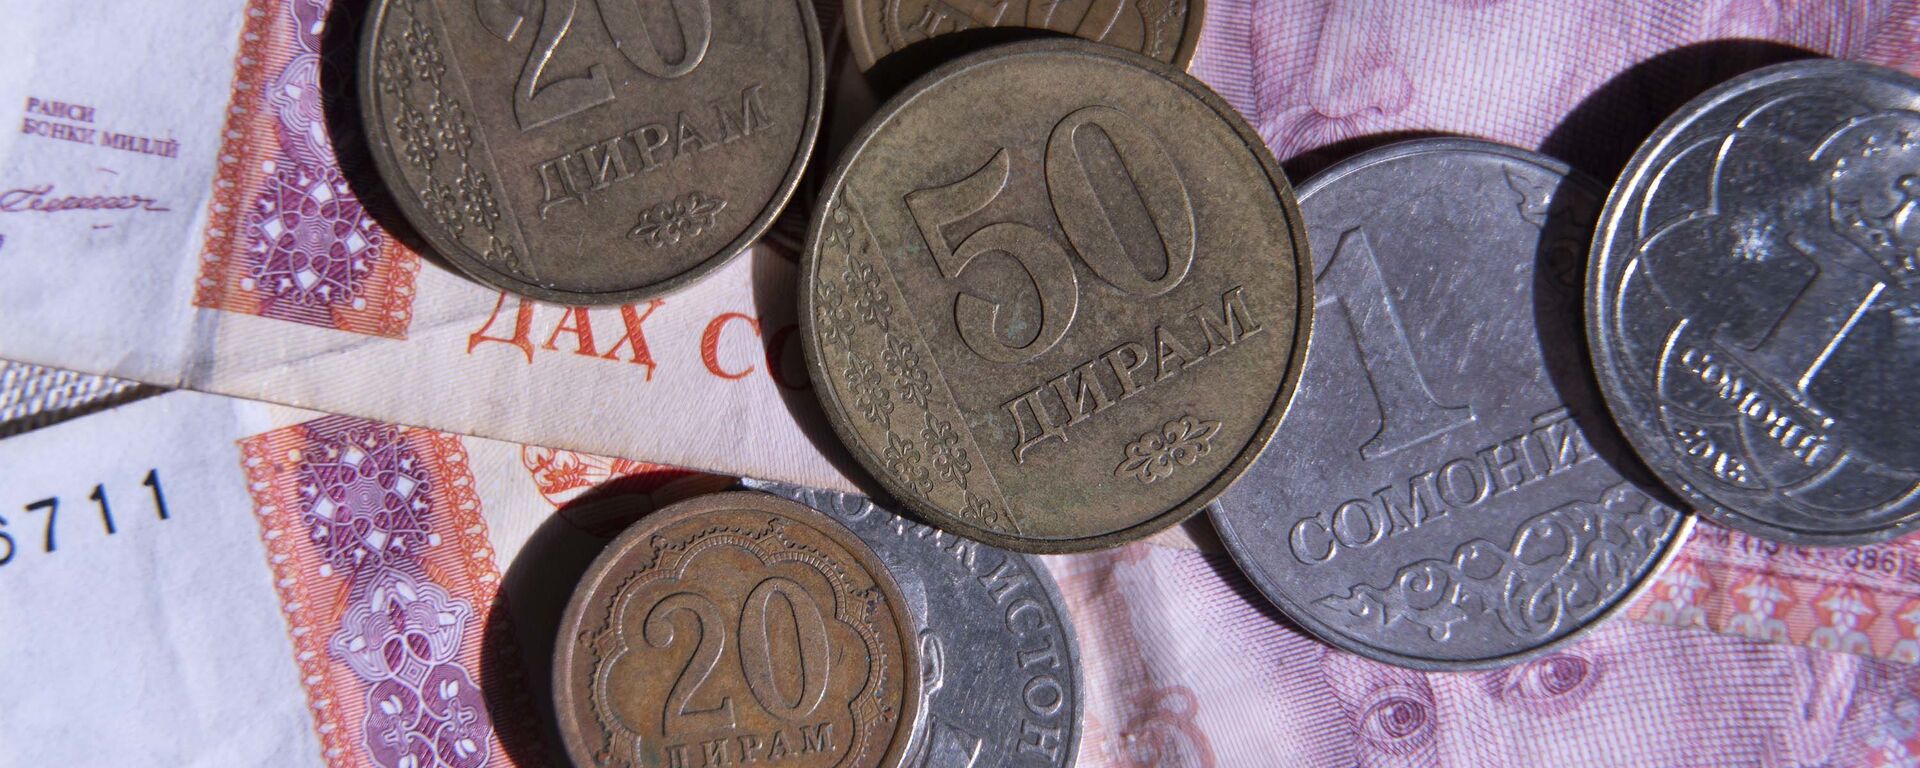 Таджикские деньги, архивное фото - Sputnik Тоҷикистон, 1920, 17.05.2020